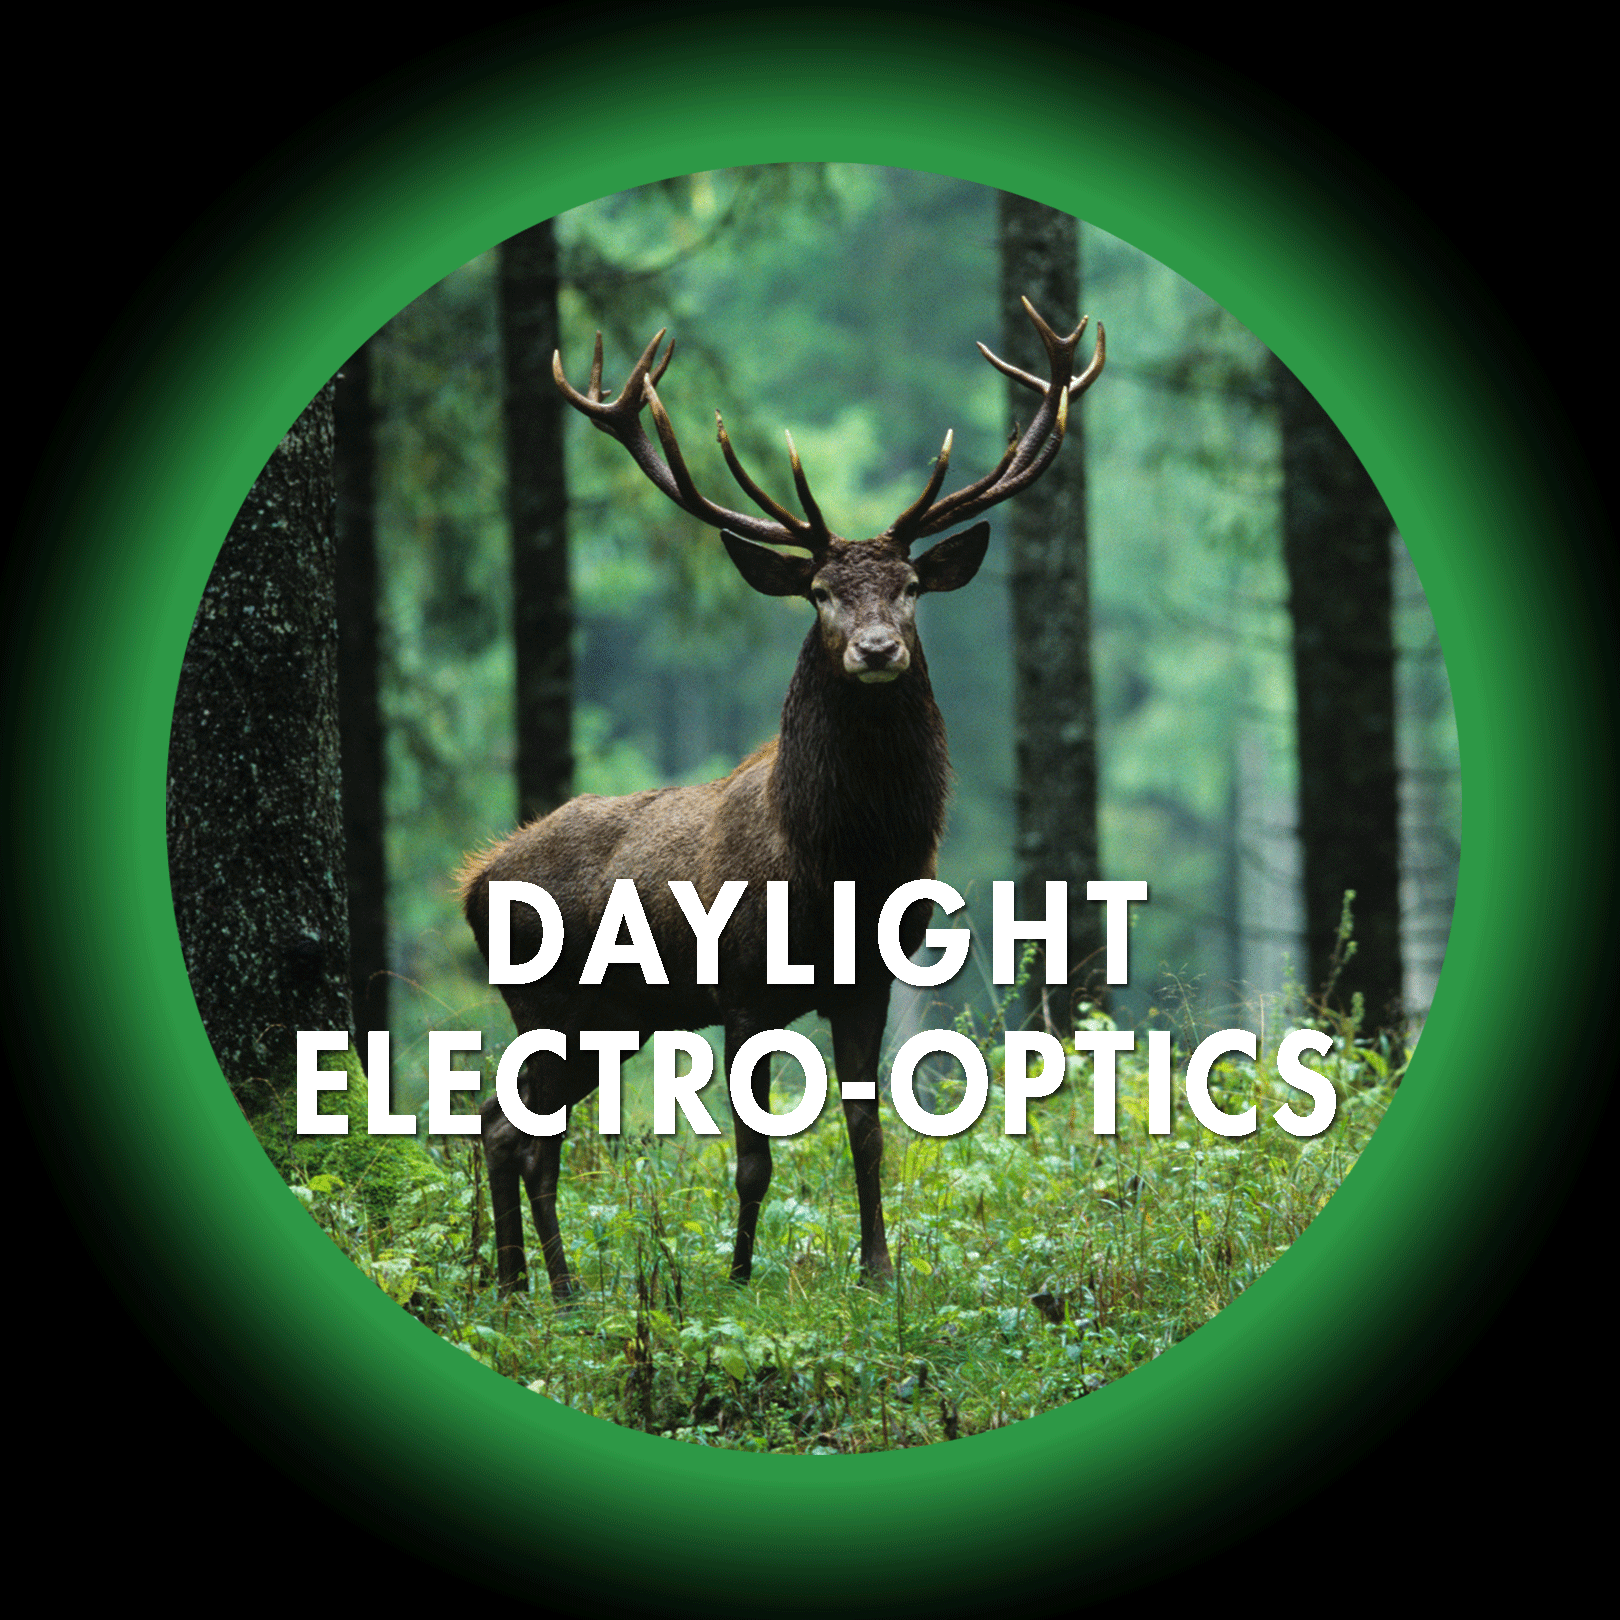 Daylight Electro-Optics